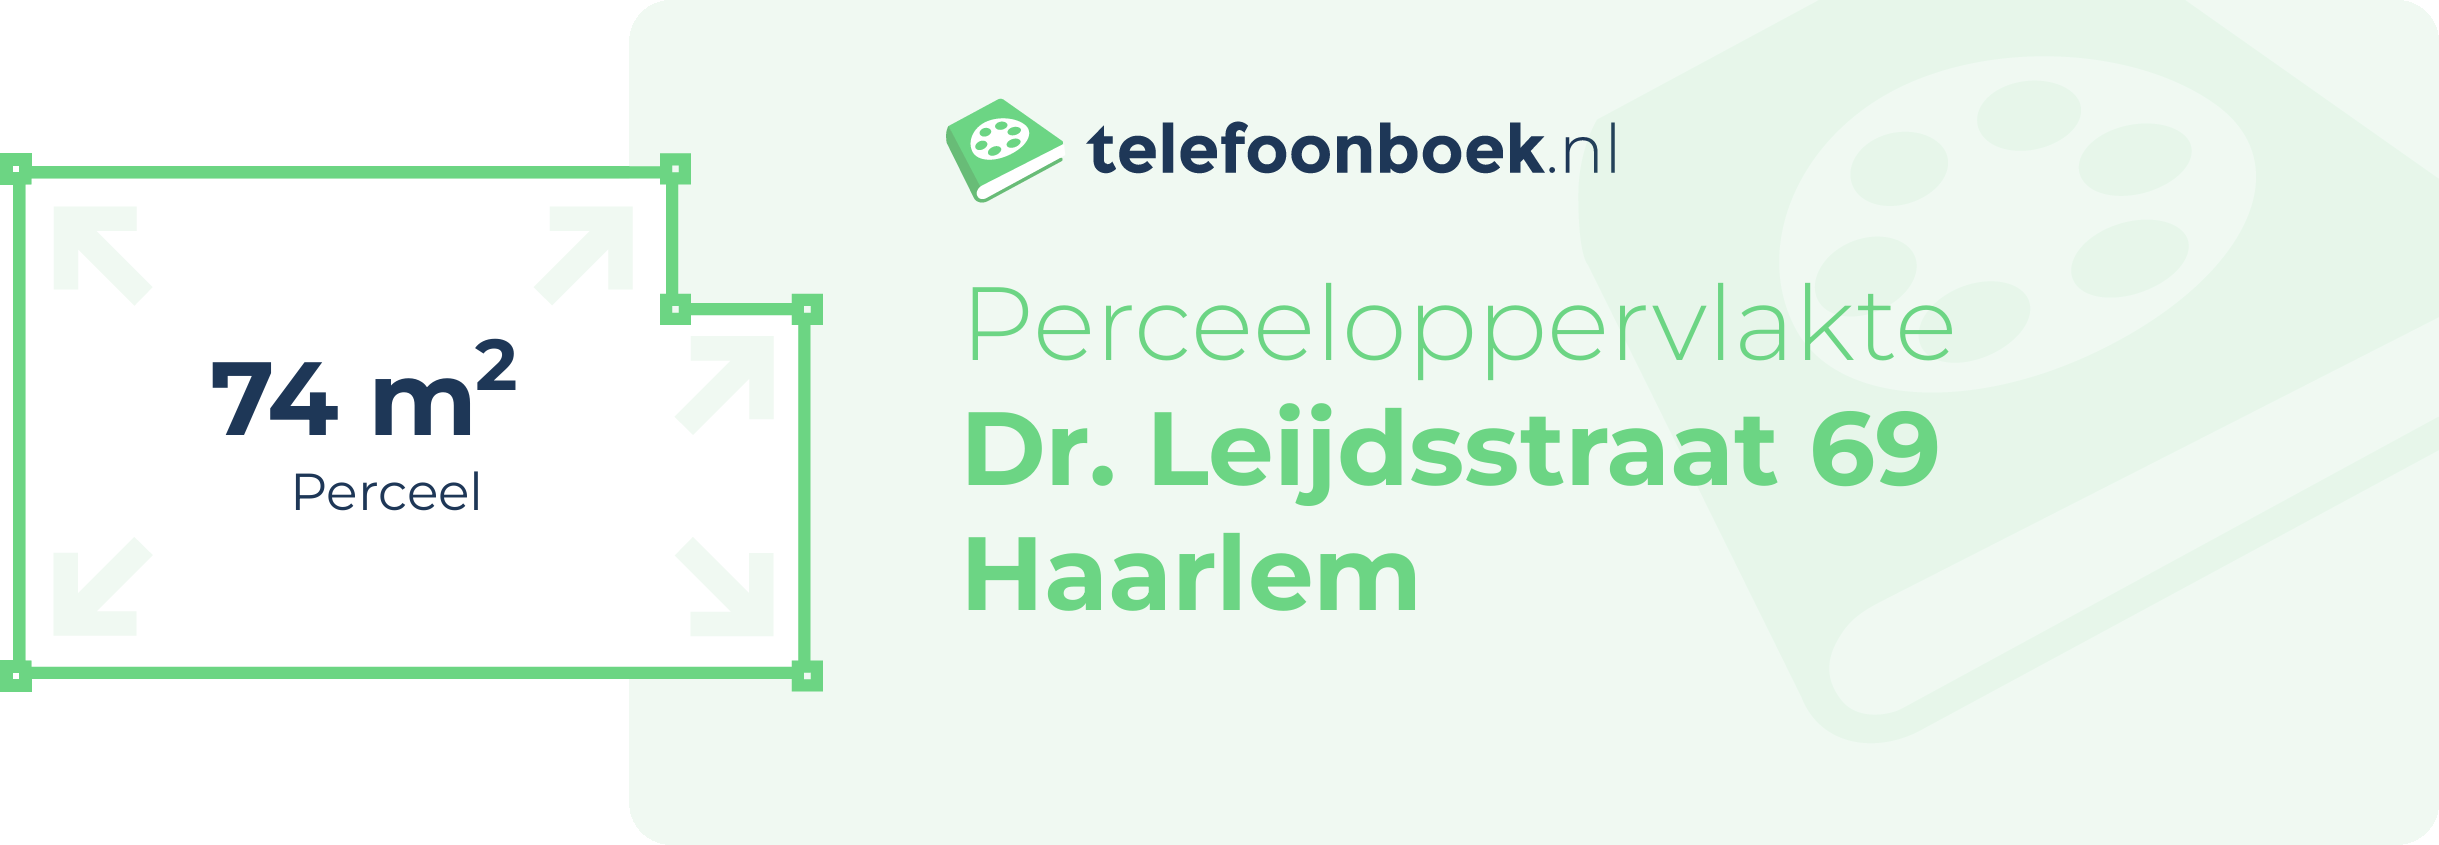 Perceeloppervlakte Dr. Leijdsstraat 69 Haarlem